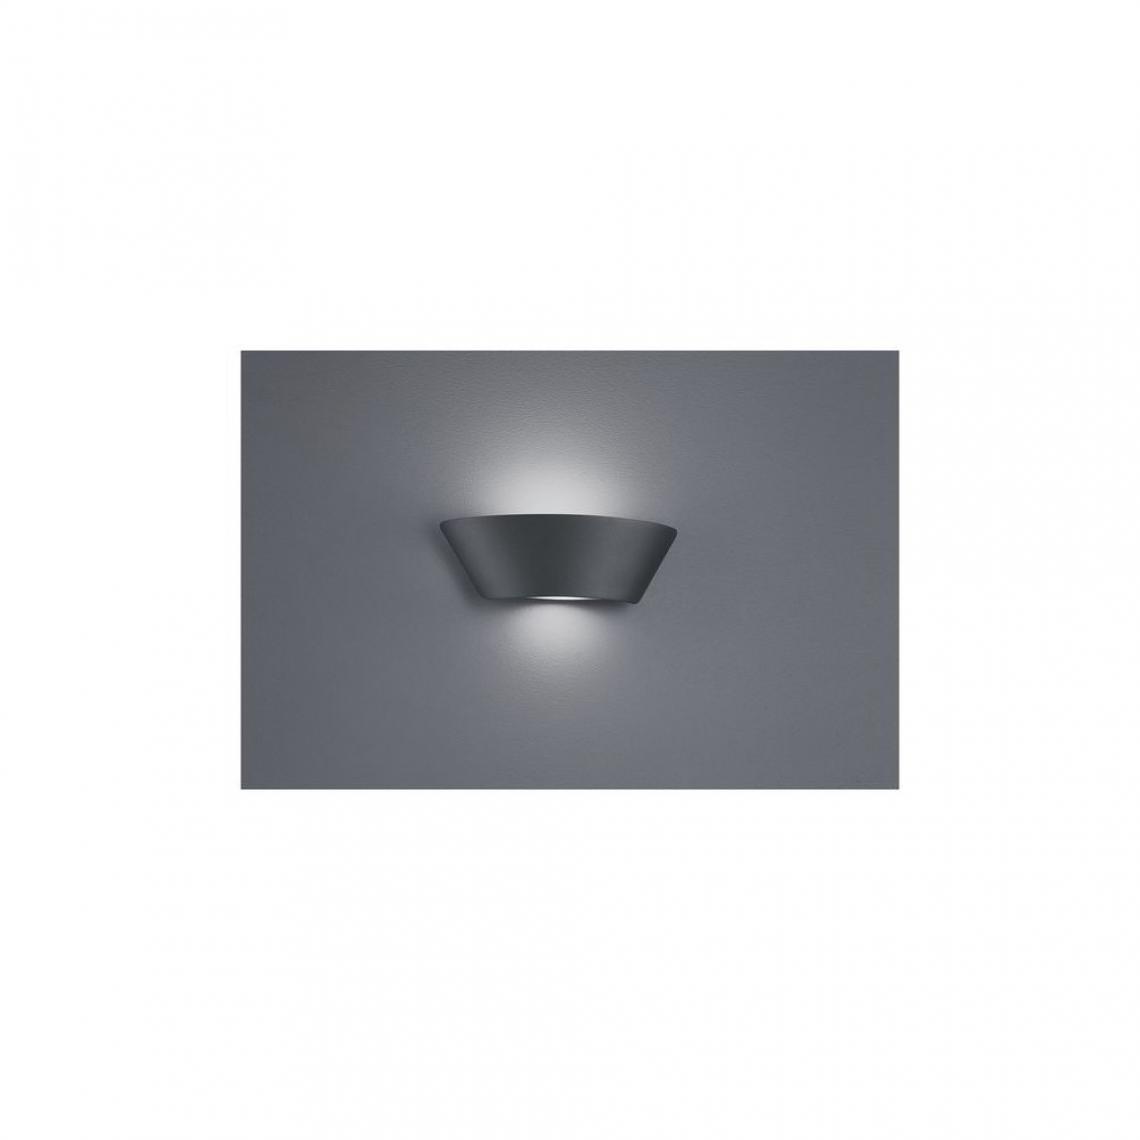 Boutica-Design - Applique Sacramento Anthracite 1x2W SMD LED - Applique, hublot